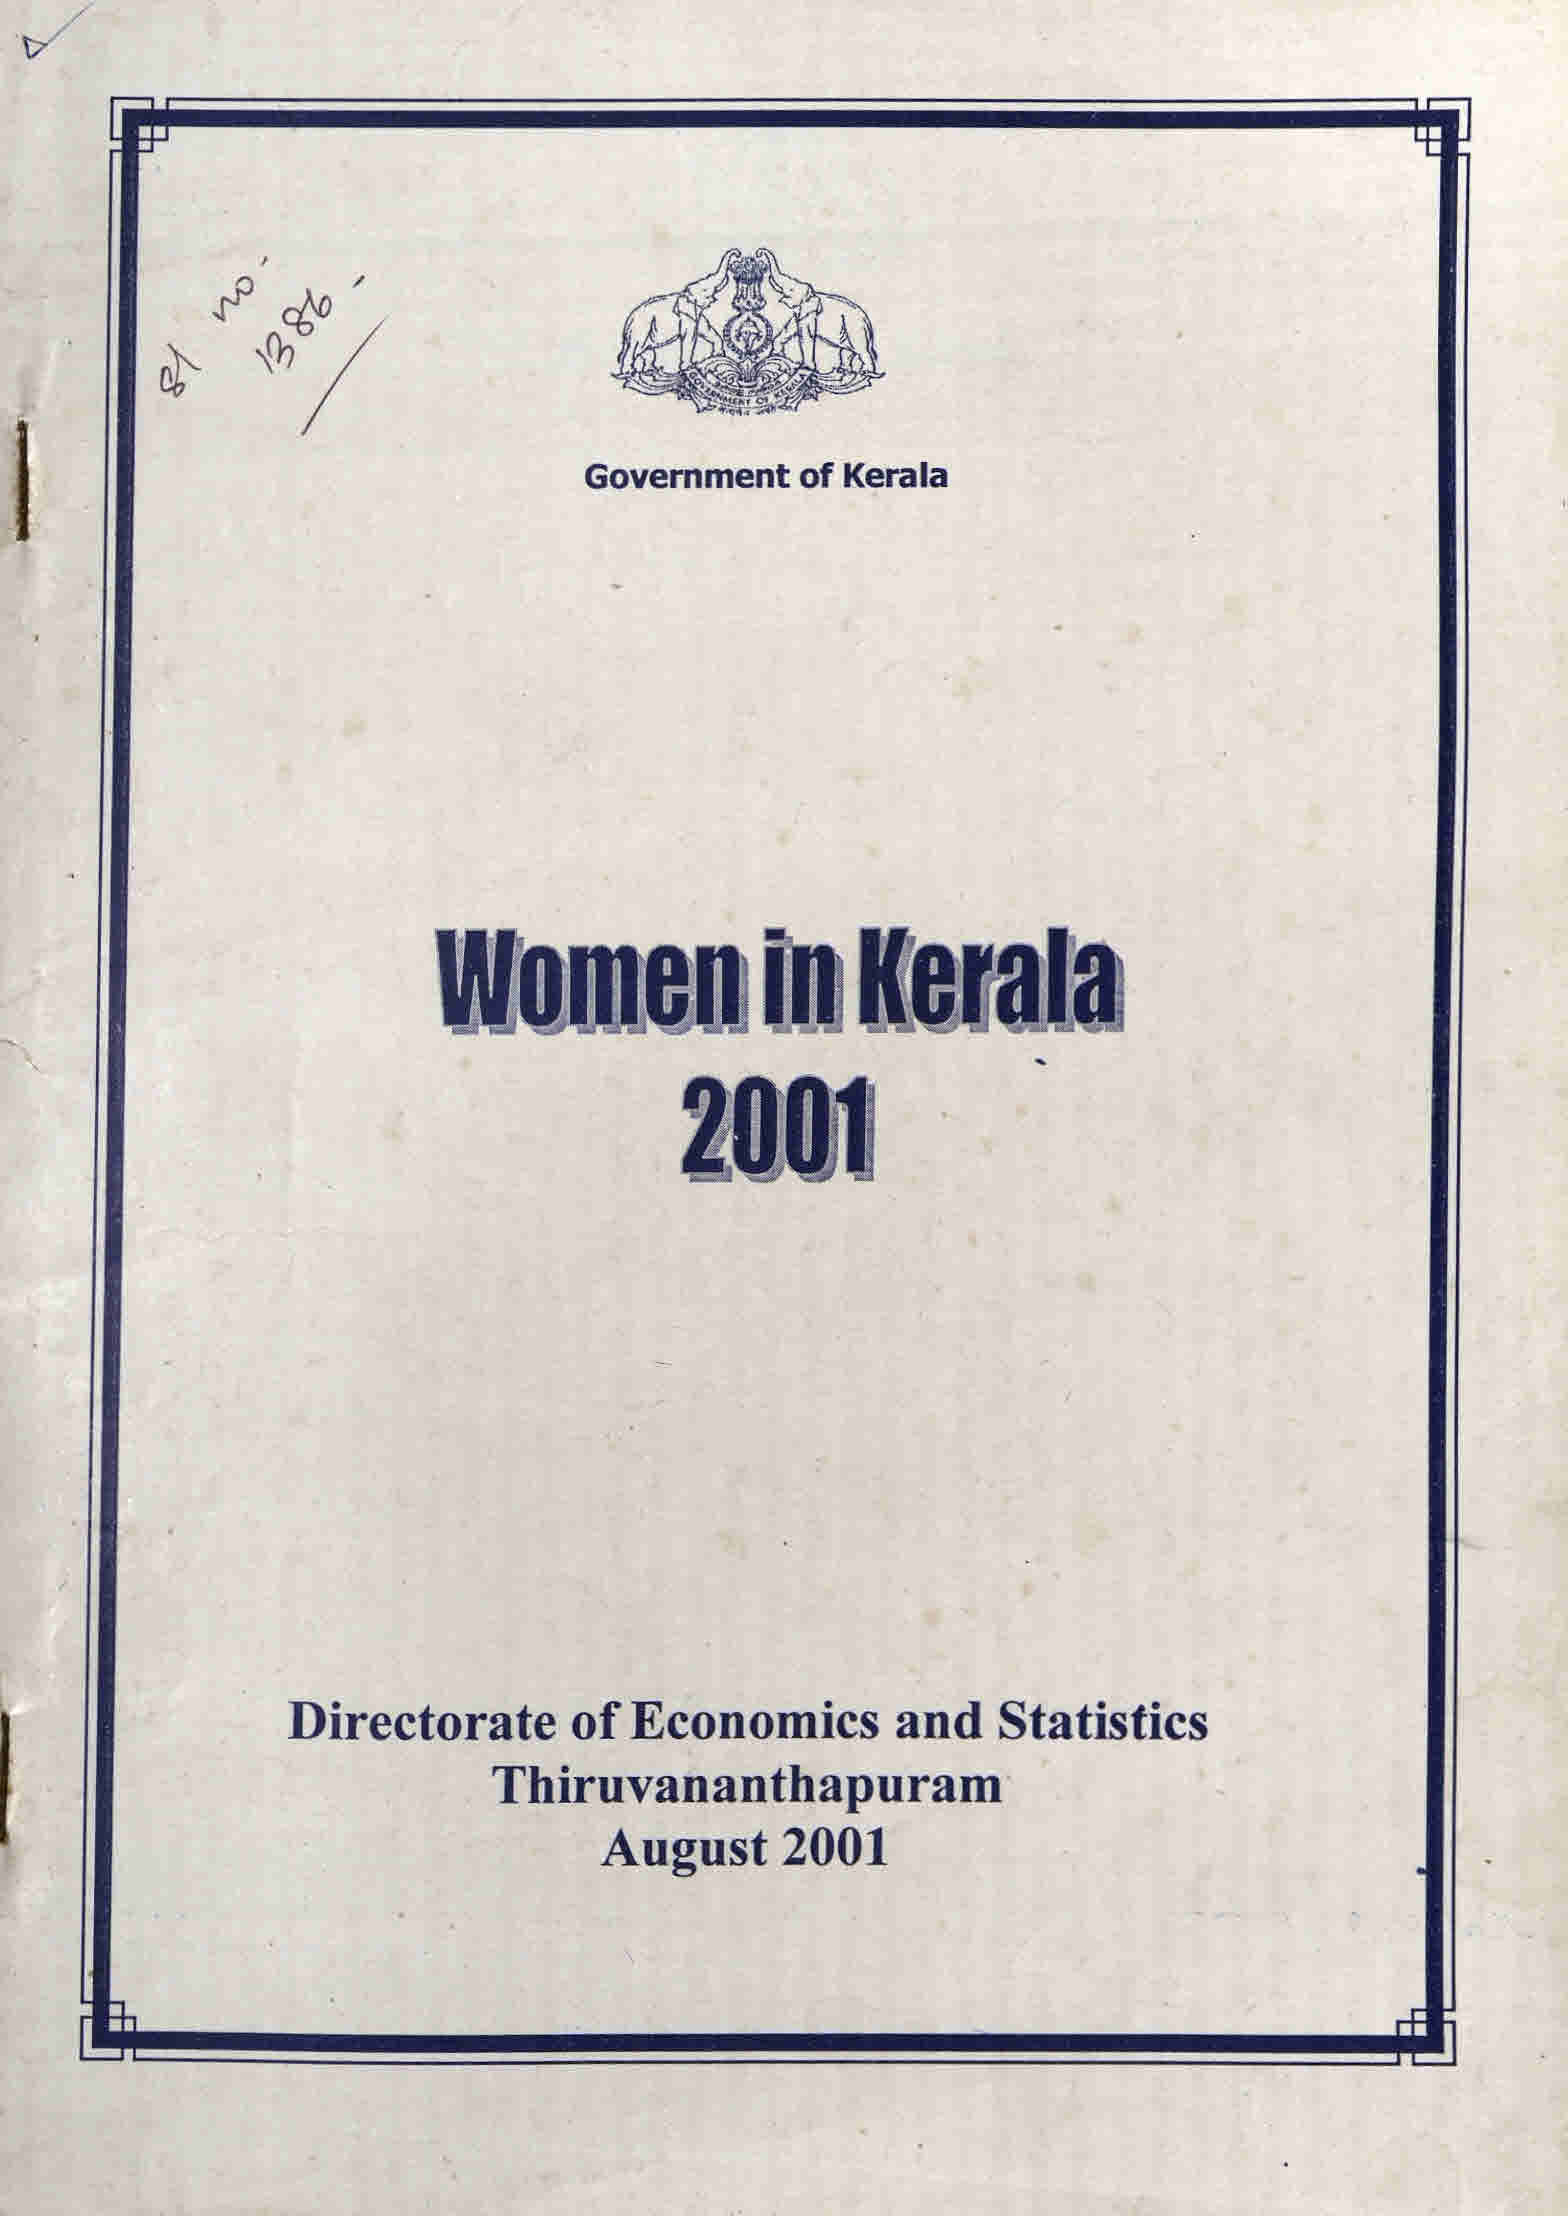 WOMEN IN KERALA 2001